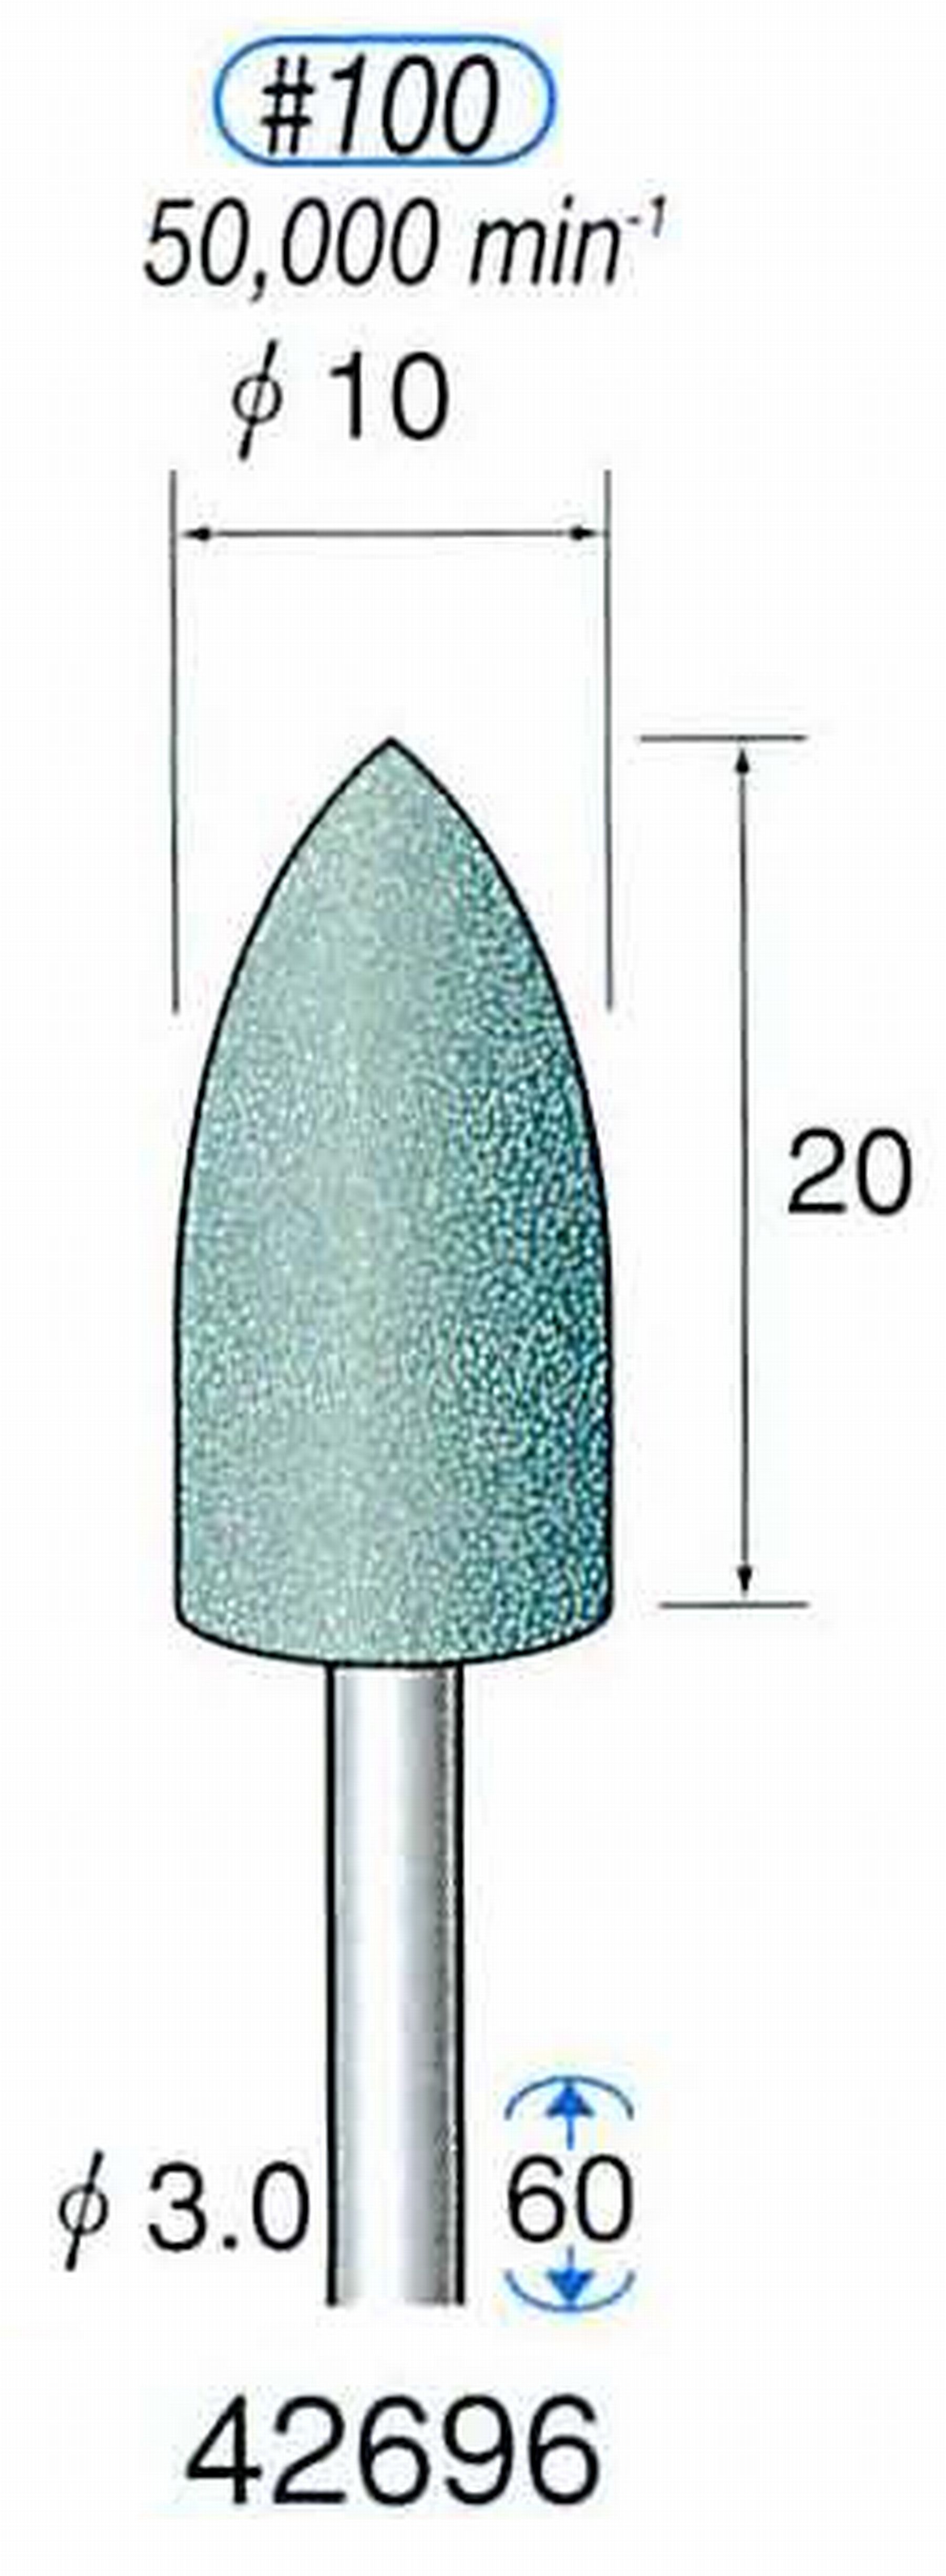 ナカニシ/NAKANISHI 軸付砥石(GC砥粒) グリーン砥石 軸径(シャンク) φ3.0mm 42696